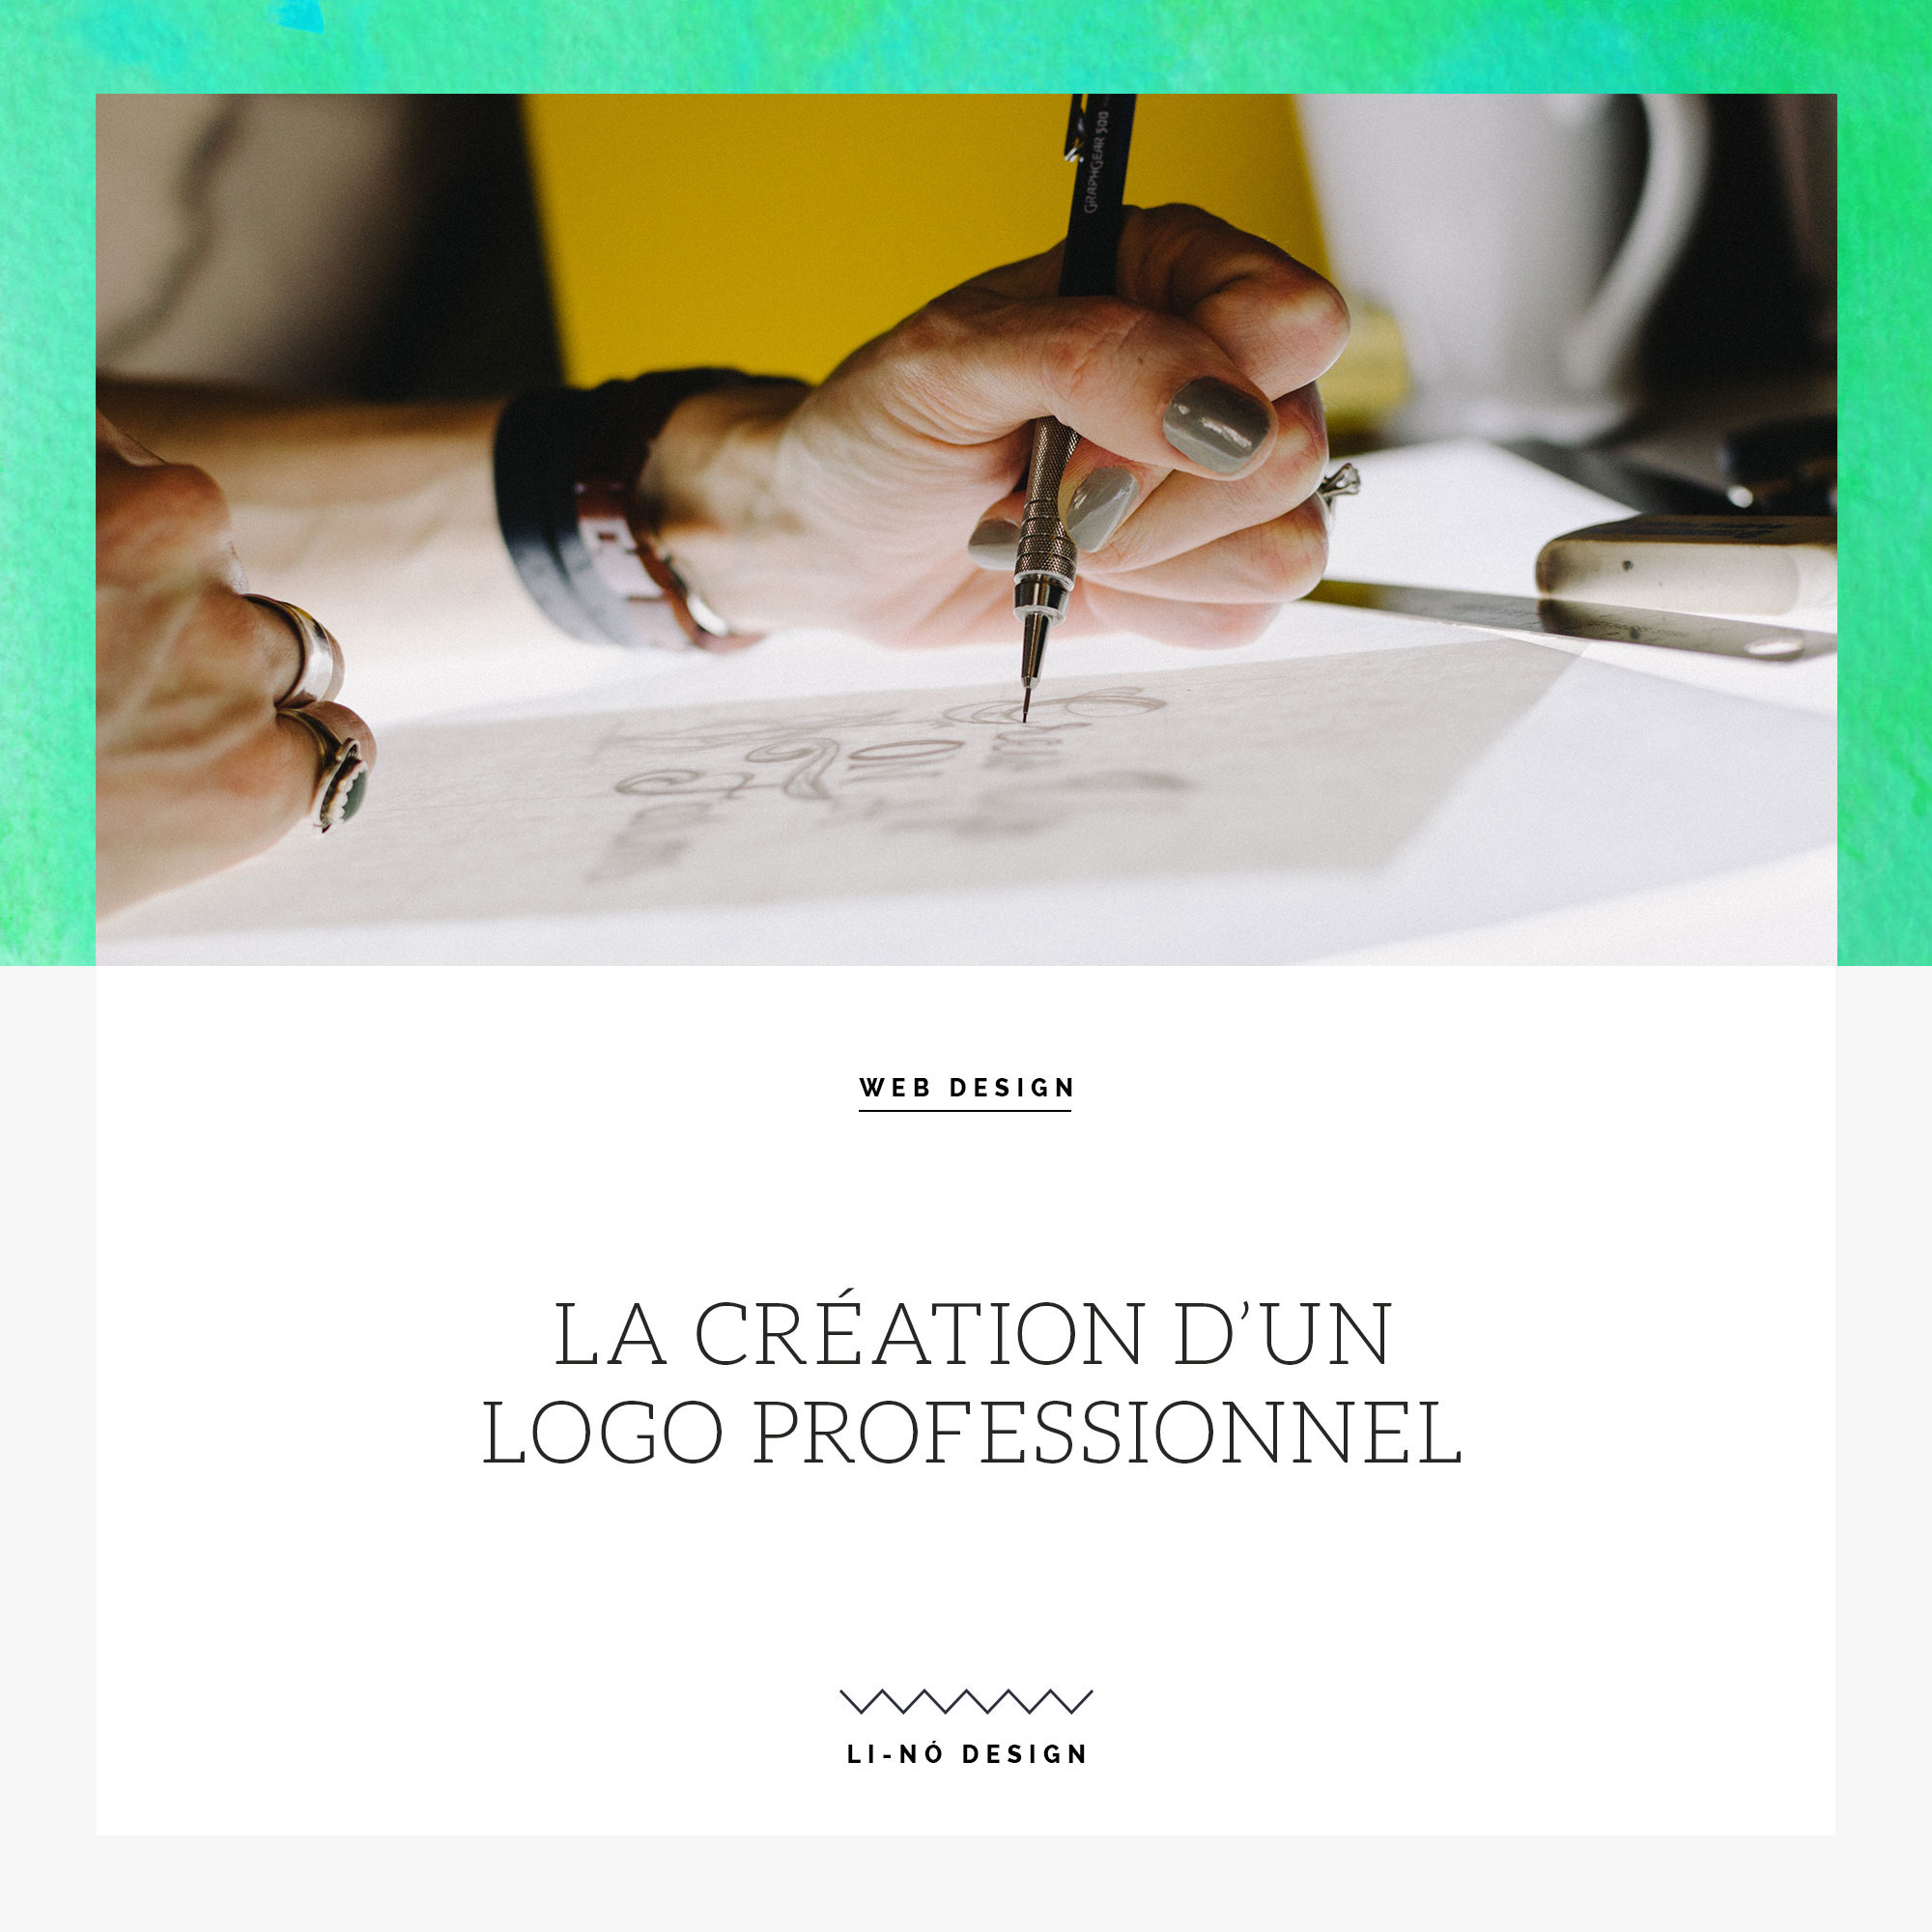 La création d’un logo professionnel